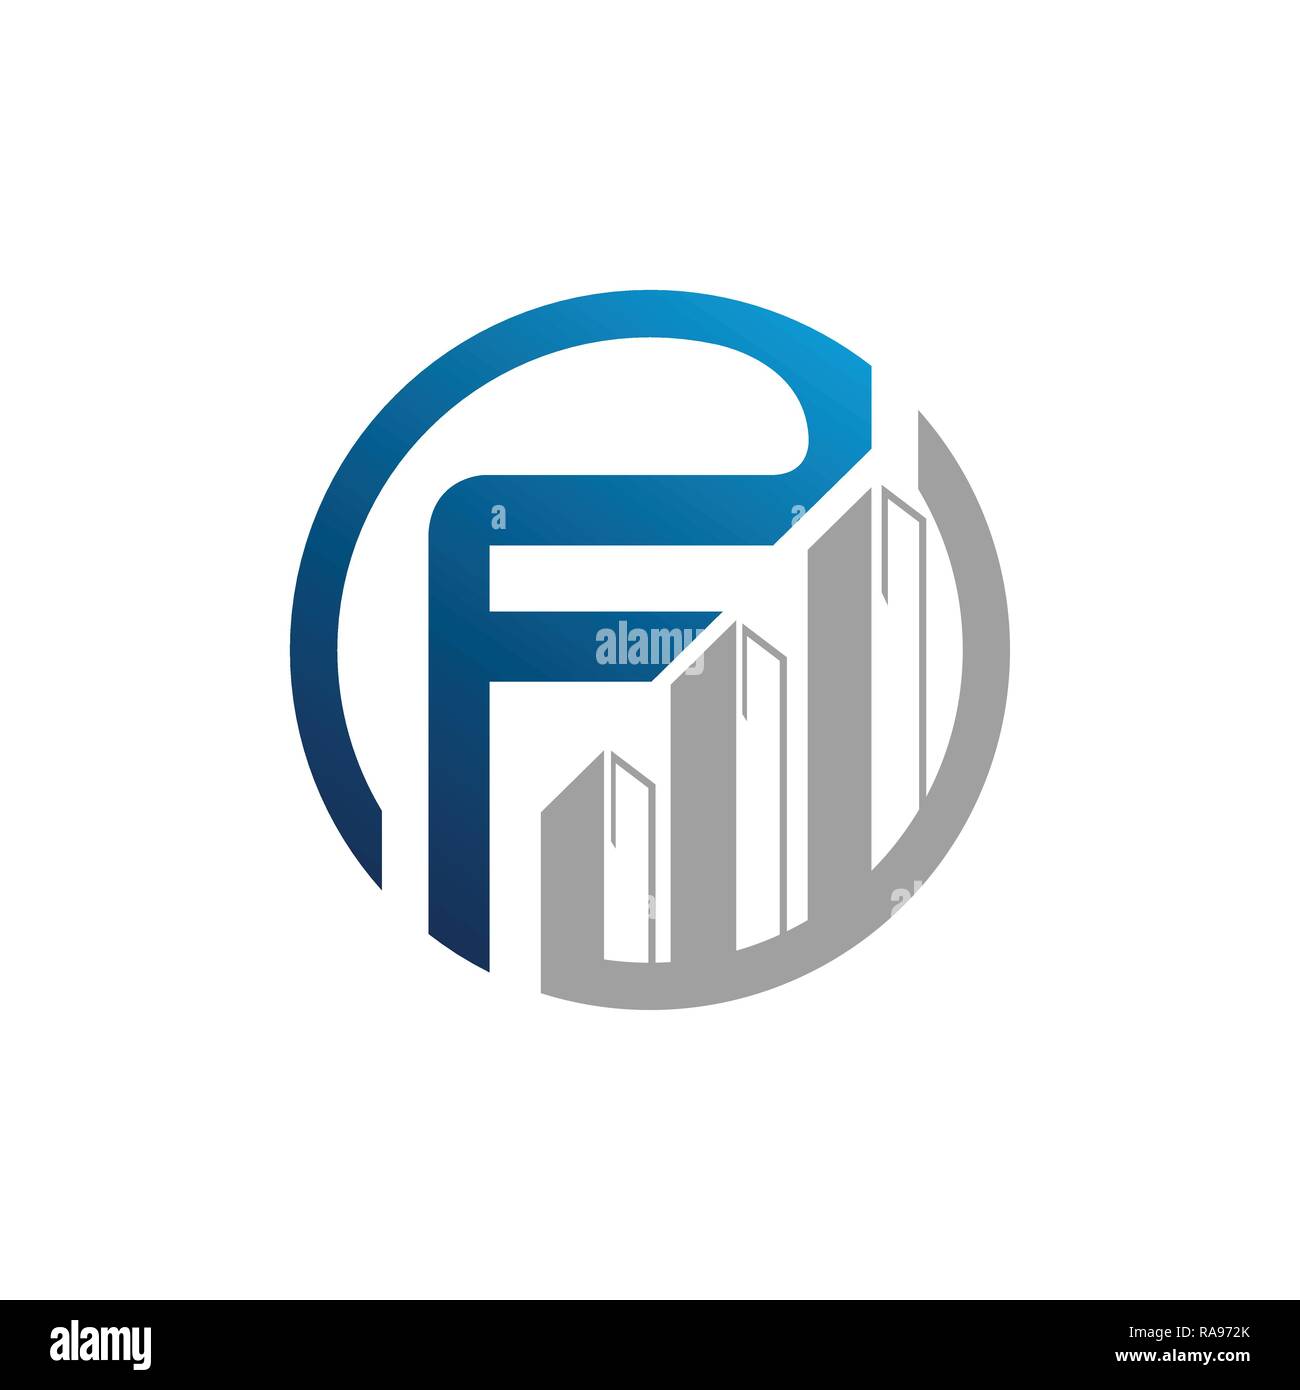 Kreatives Schreiben F quadratische Logo template Vector Illustration, Logo für Corporate Identity der Firma der Buchstabe F, typographische Schrift Stock Vektor